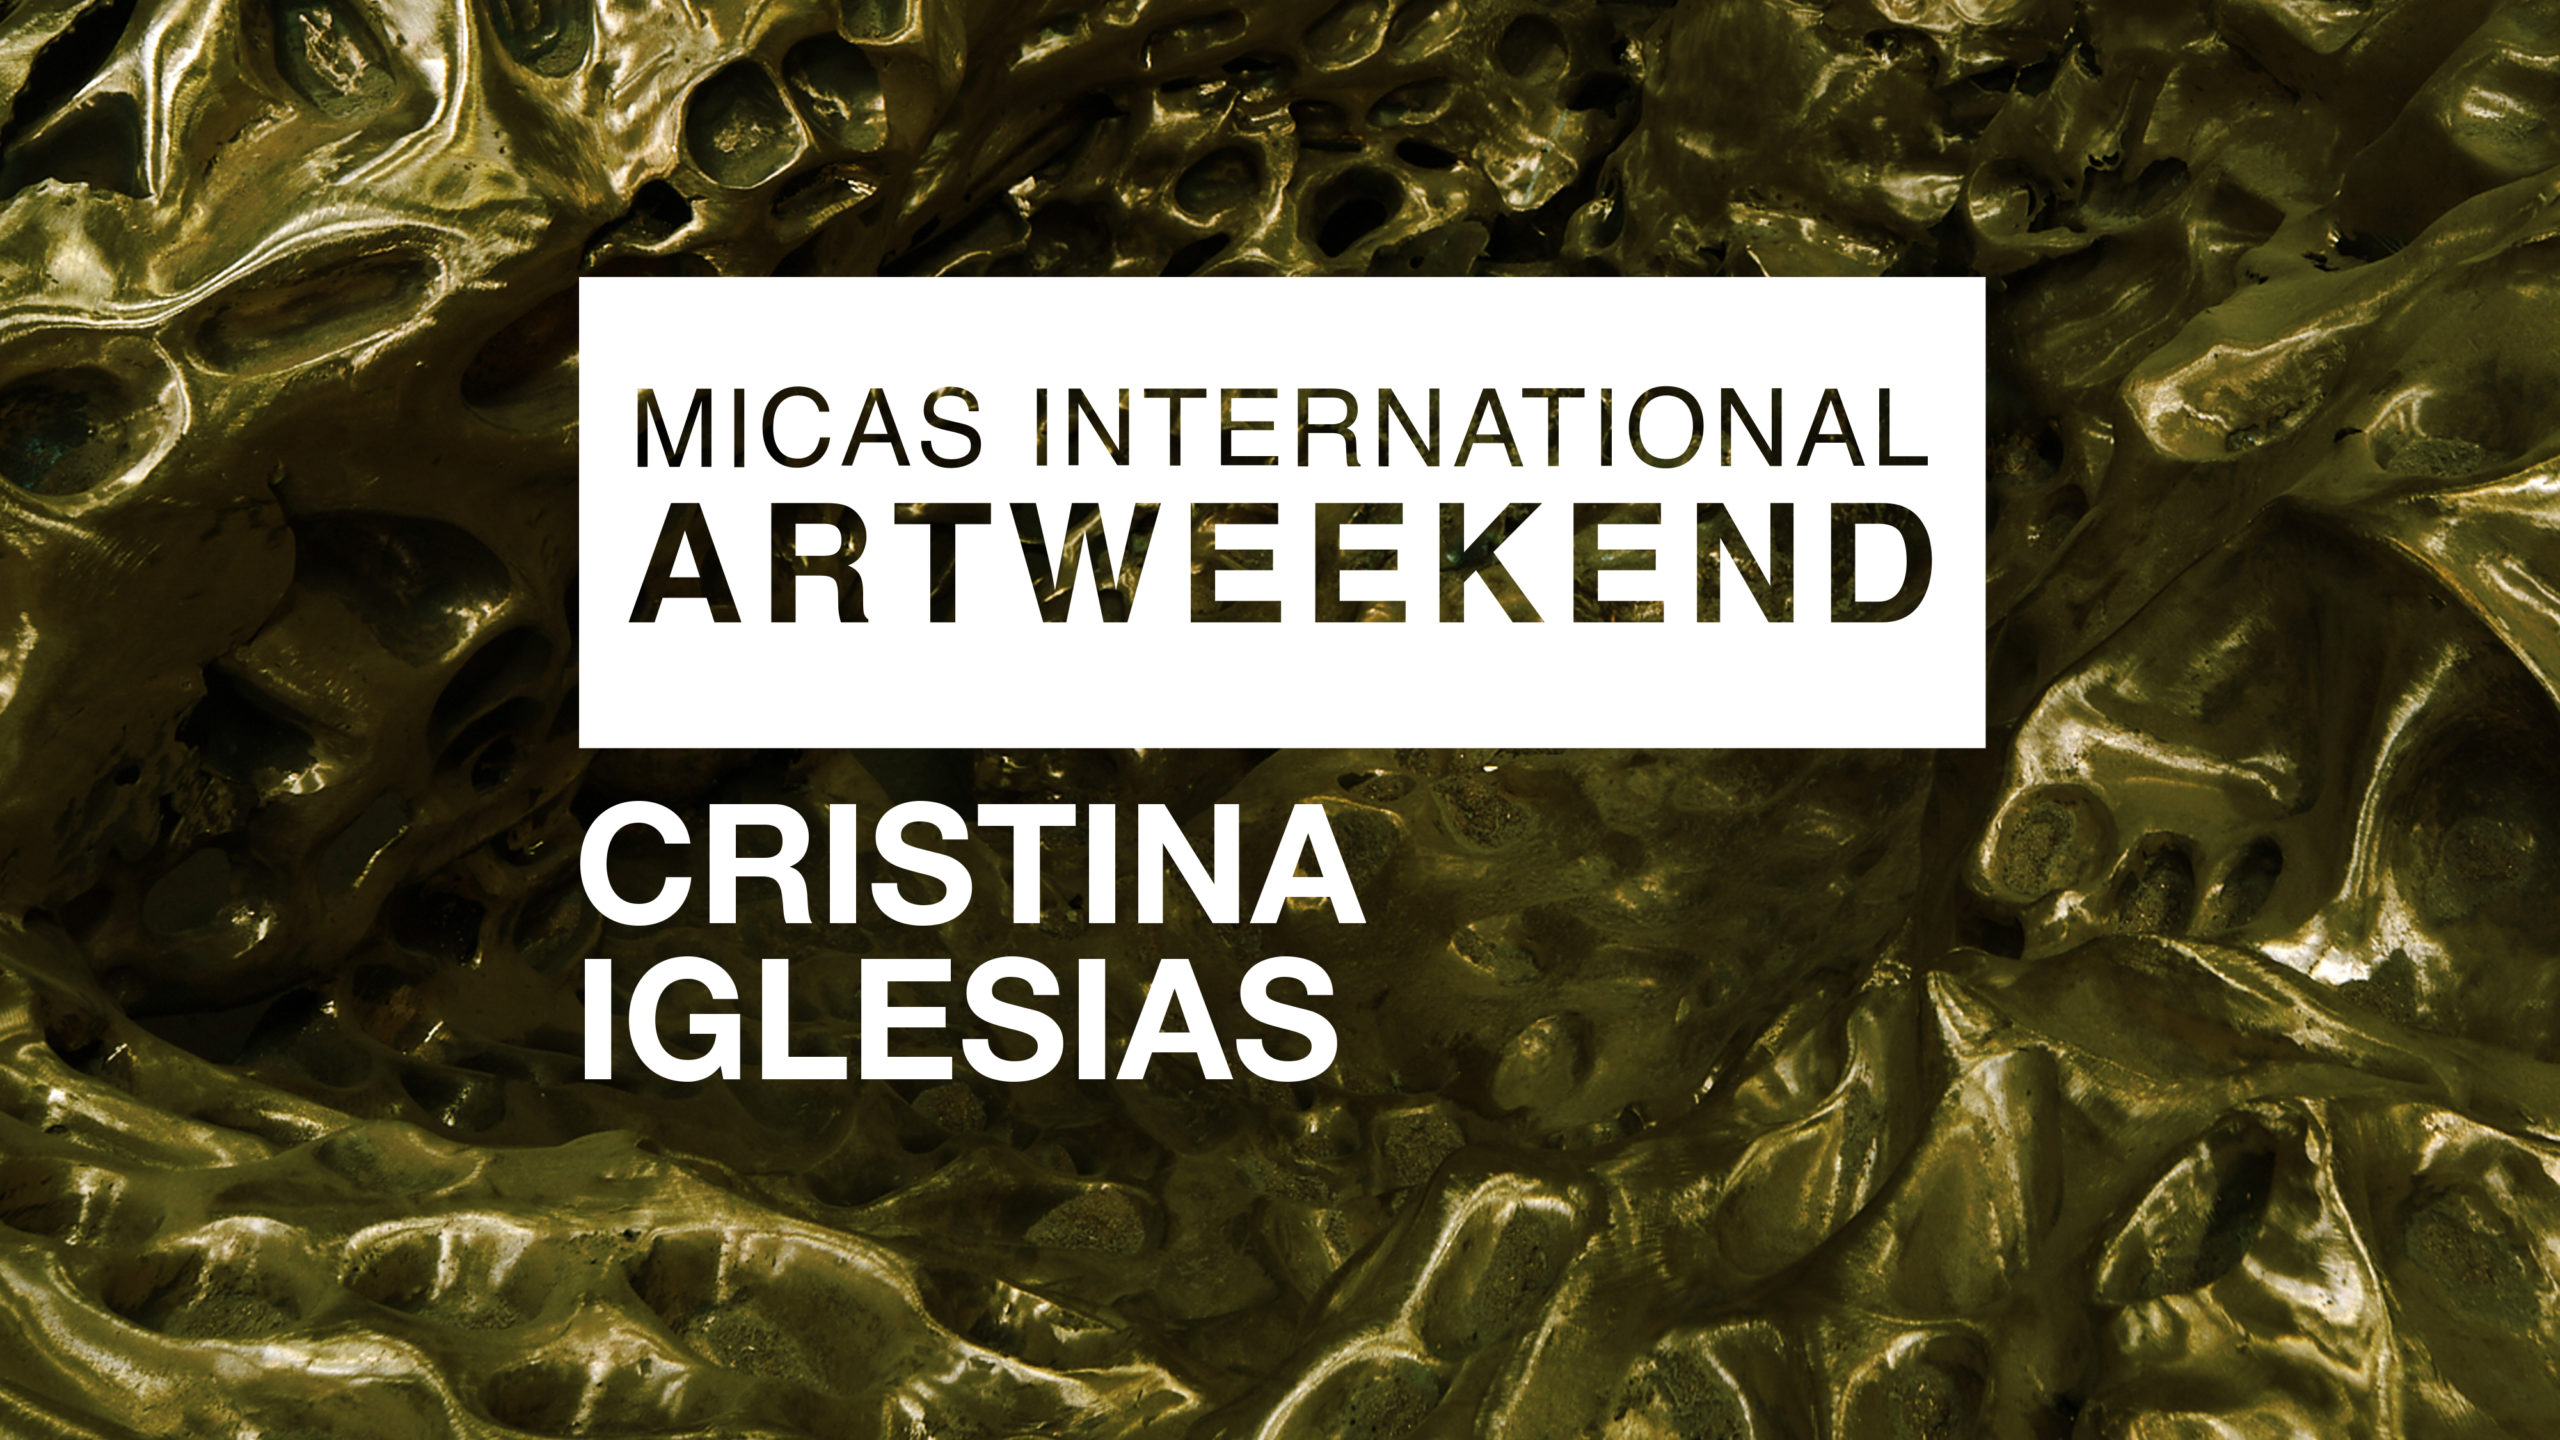 The MICAS International Art Weekend